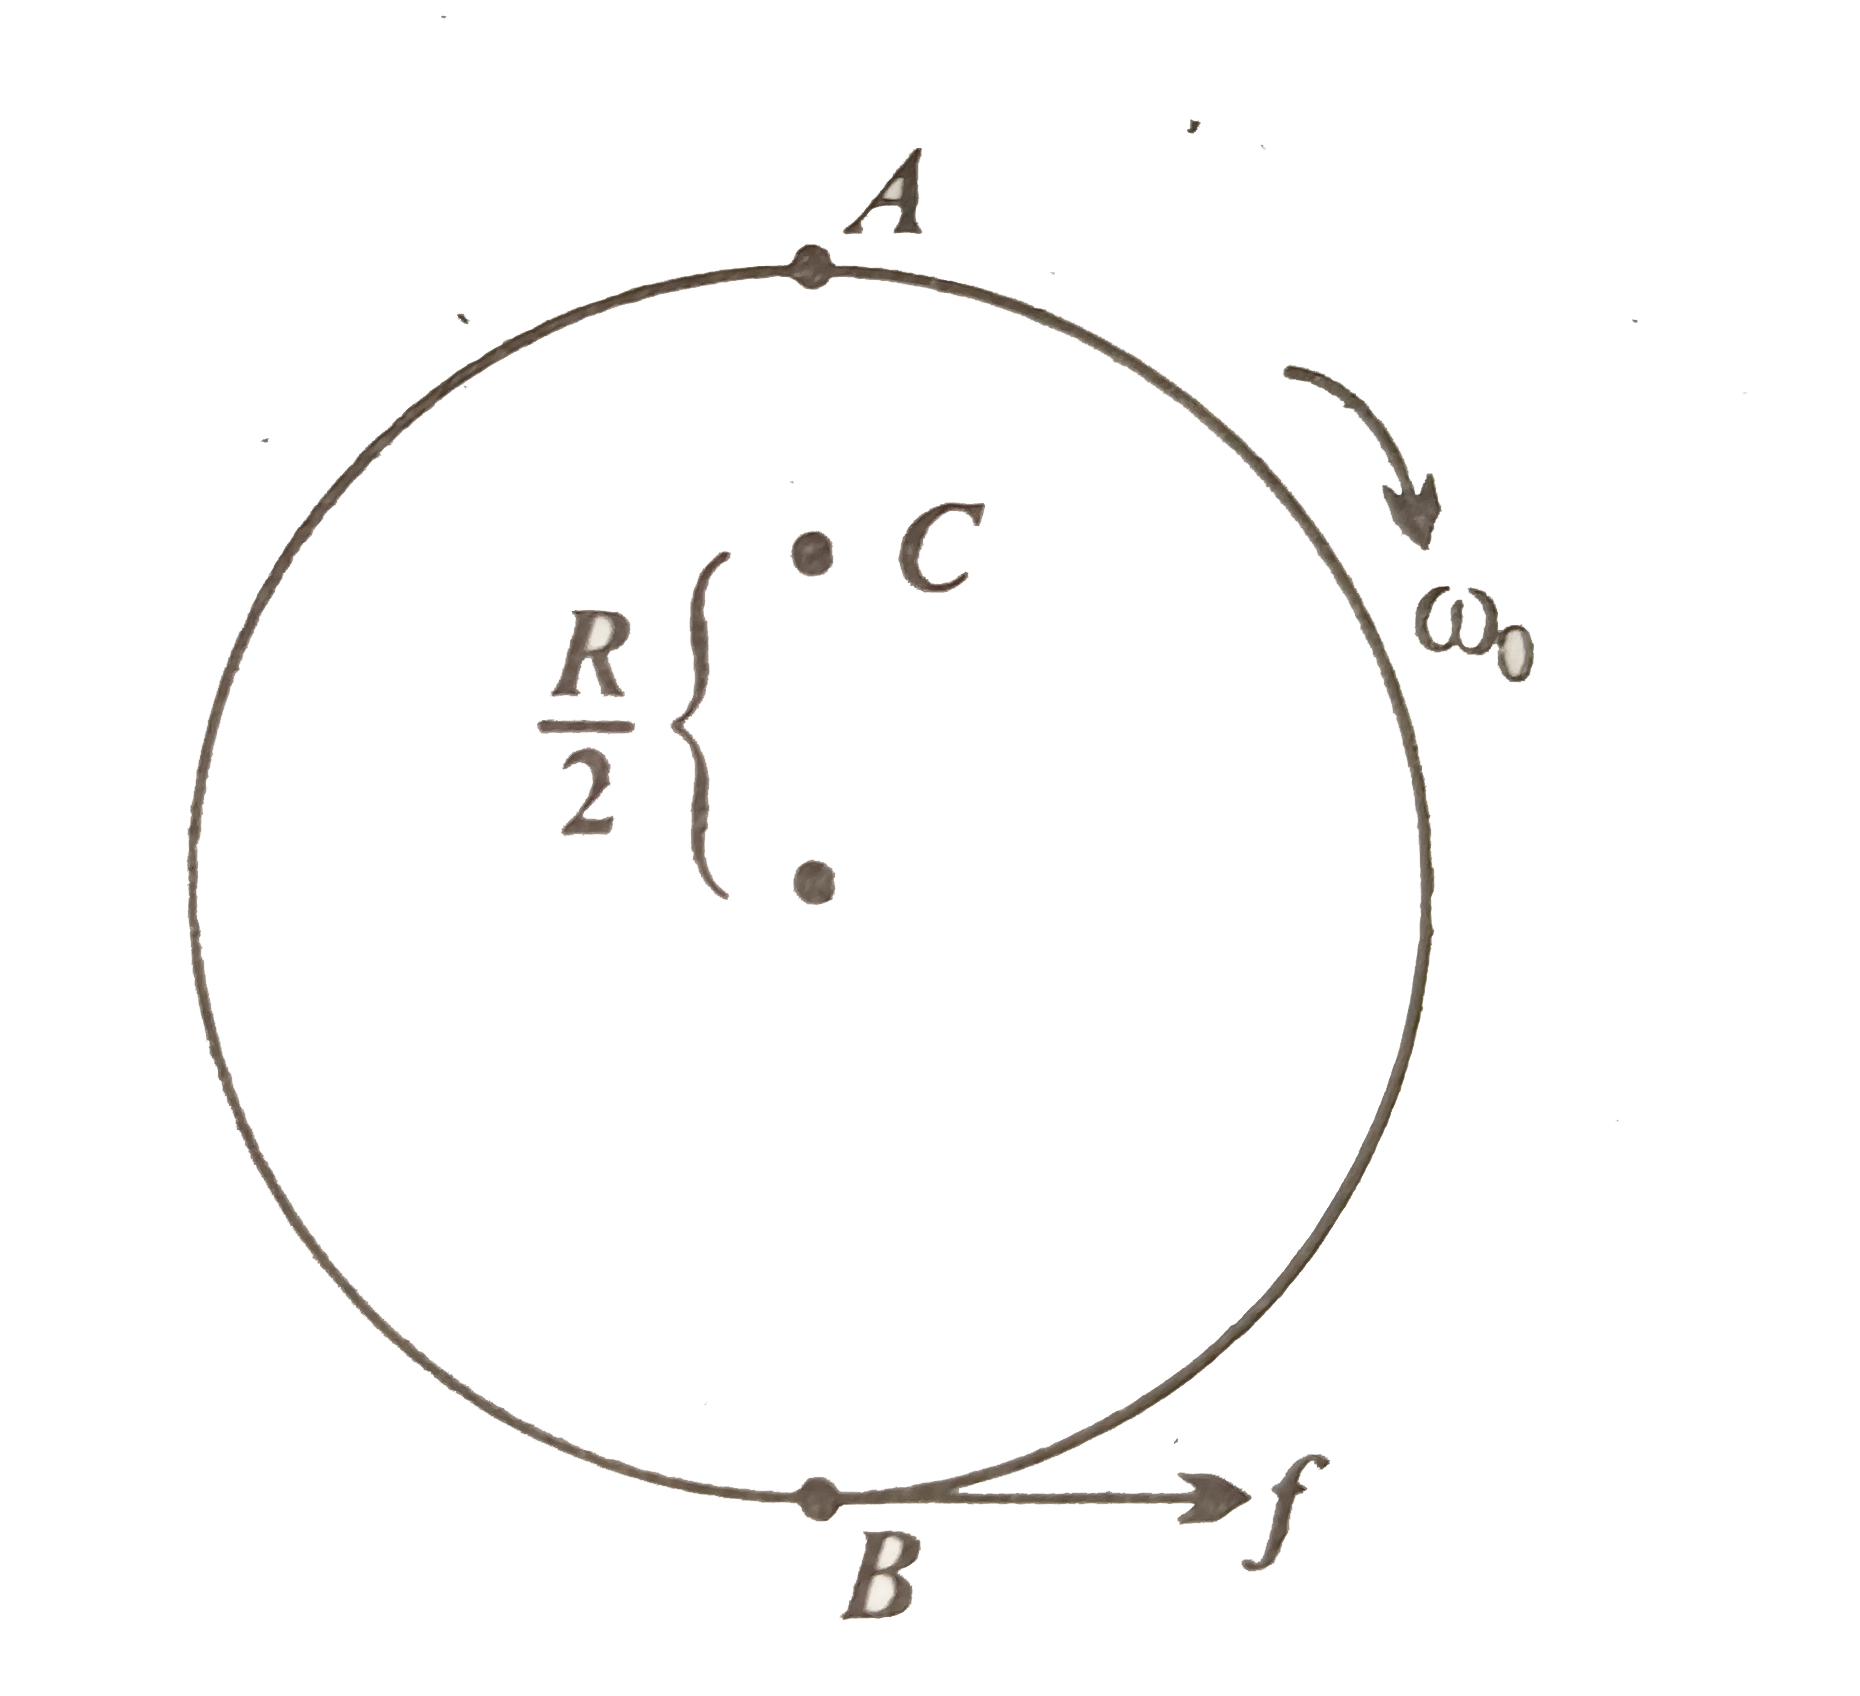 अपने अक्ष पर omega(0) कोणीय चाल से घूर्णन करने वाली किसी चक्रिका को धीरे से ( स्थानांतरीय धक्का दिए बिना ) किसी पूर्णतः घर्षणरहित मेज पर रखा जाता है । चक्रिका की त्रिज्या r है । चित्र में दर्शाई चक्रिका के बिंदुओं A, B तथा C पर रैखिक वेग क्या हैं ? क्या यह चक्रिका चित्र में दर्शाई दिशा में लोटनिक गति करेगी ?